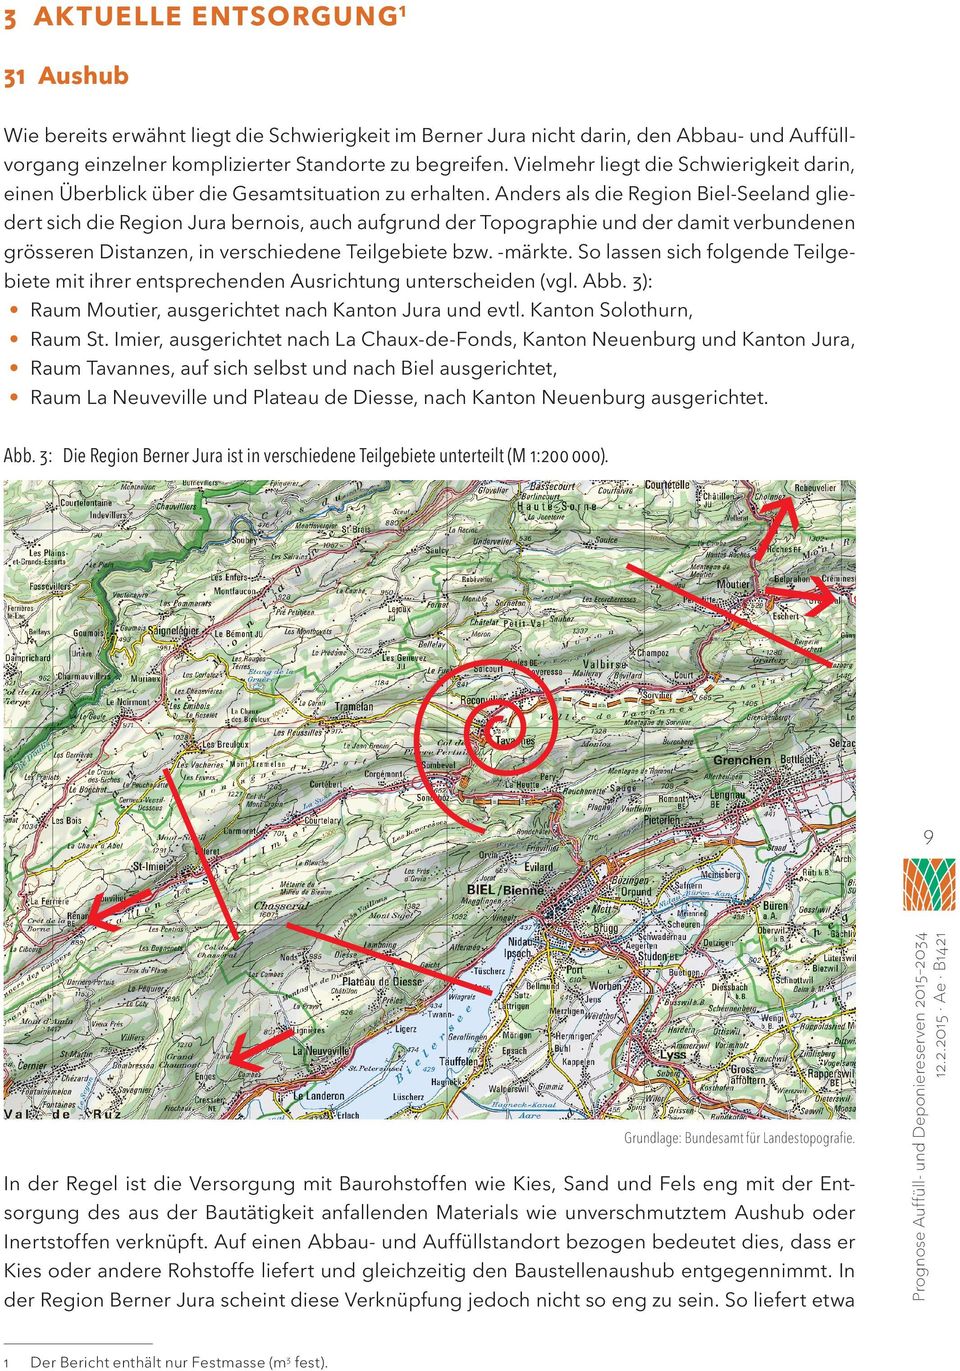 Anders als die Region Biel-Seeland gliedert sich die Region Jura bernois, auch aufgrund der Topographie und der damit verbundenen grösseren Distanzen, in verschiedene Teilgebiete bzw. -märkte.